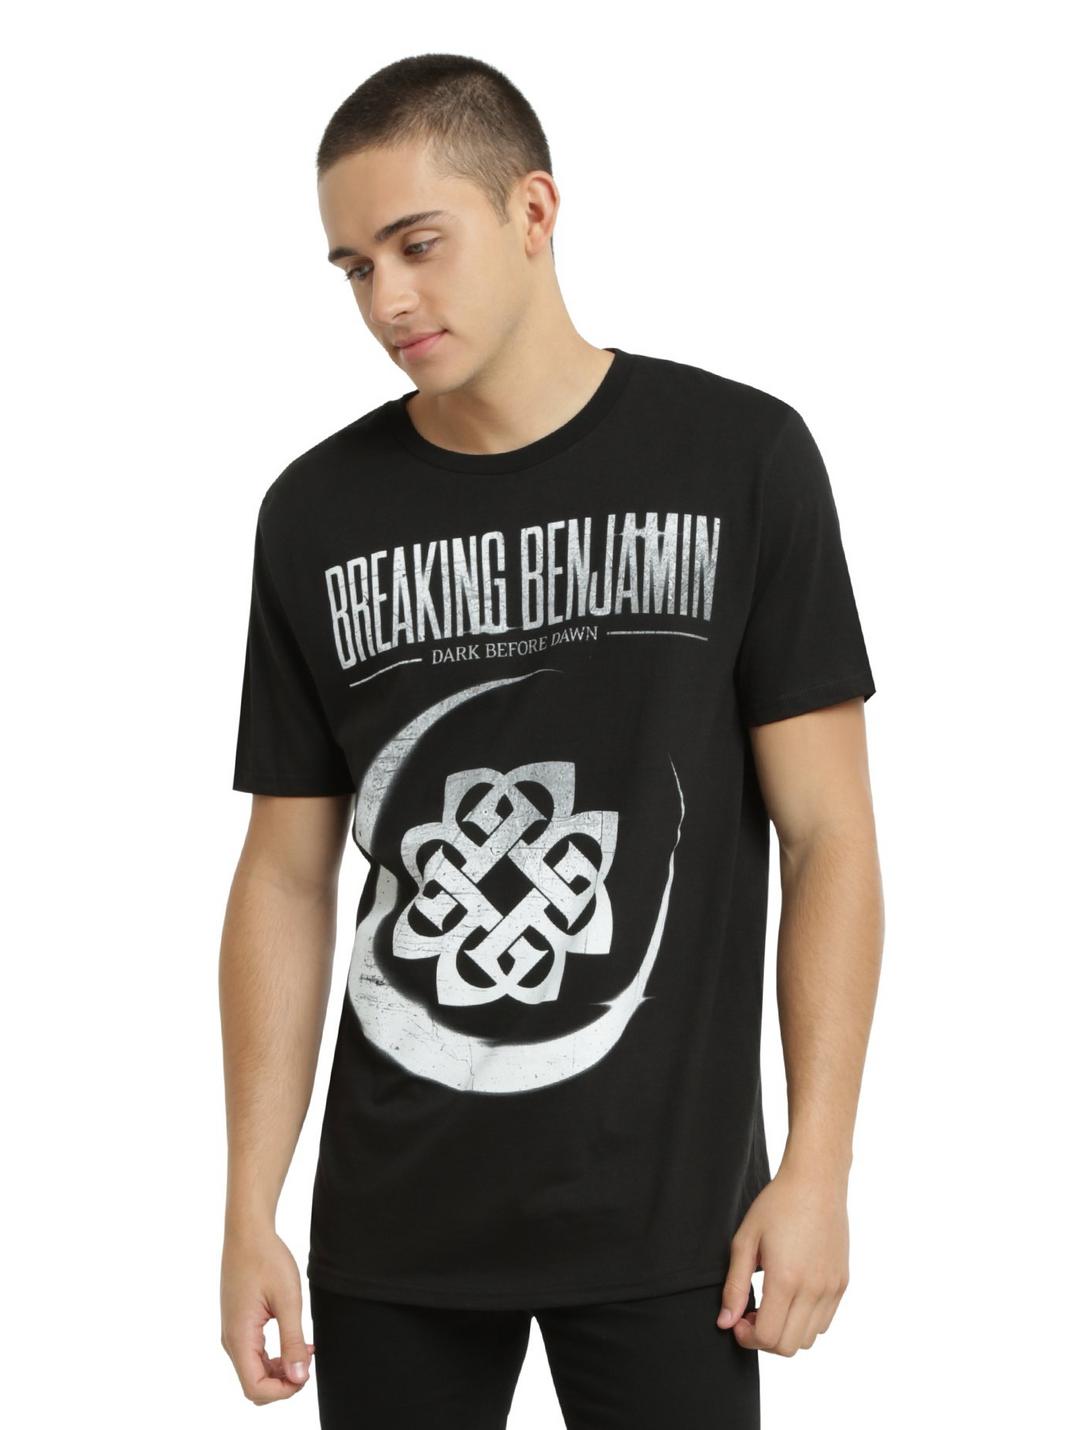 Breaking Benjamin Dark Before Dawn T-Shirt, BLACK, hi-res